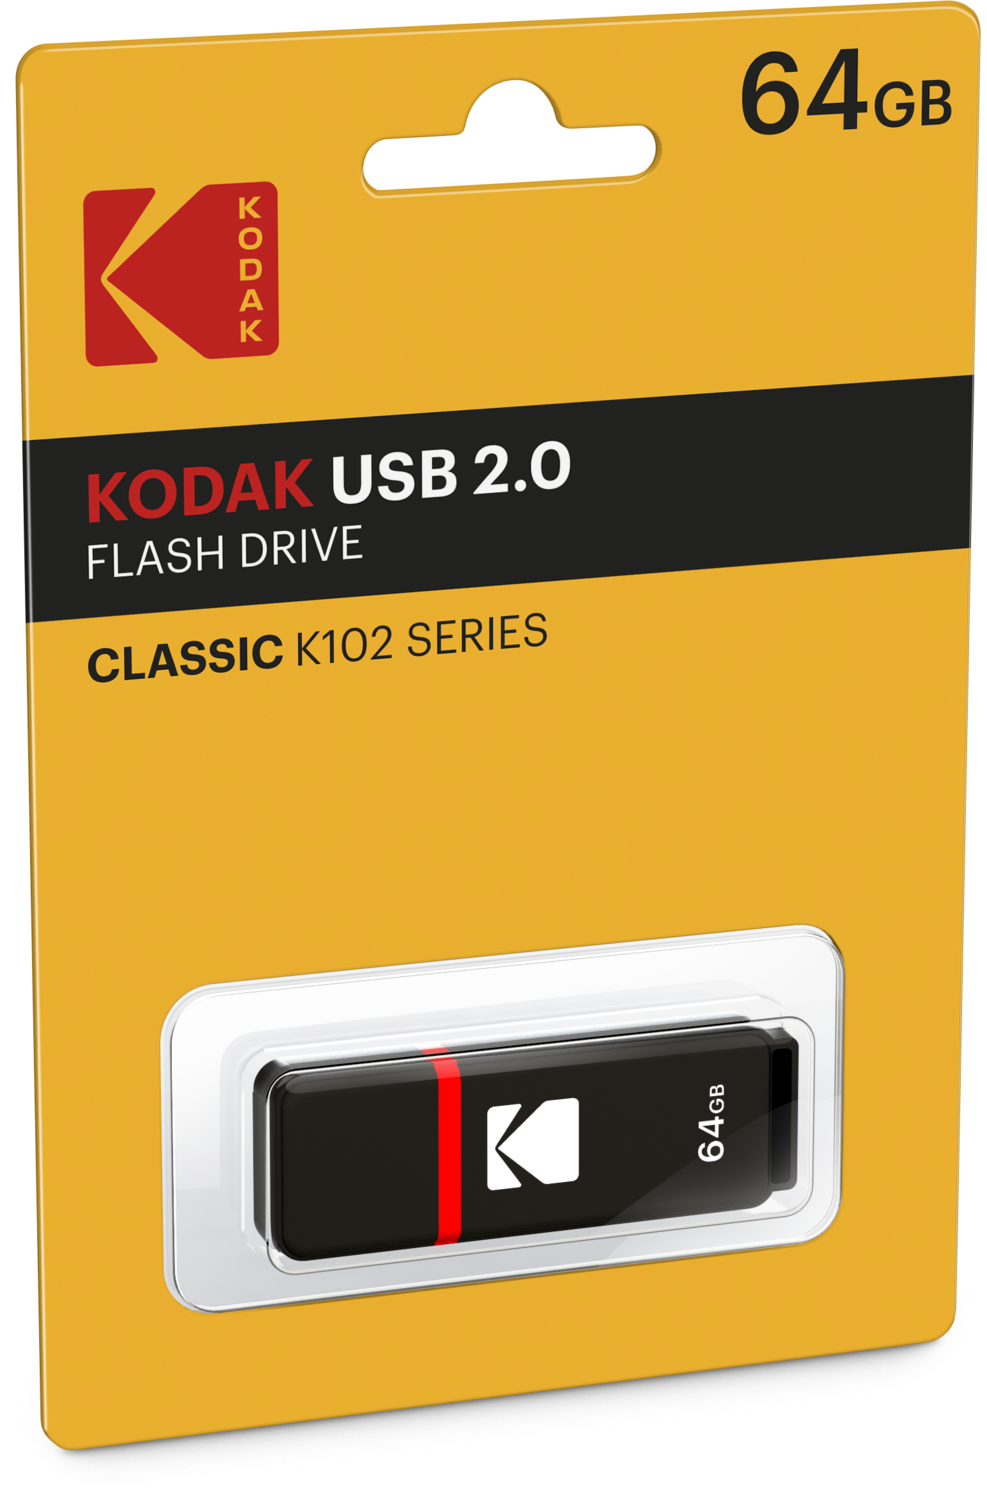 KODAK 64GB USB 2.0 FLASH DRIVE K102